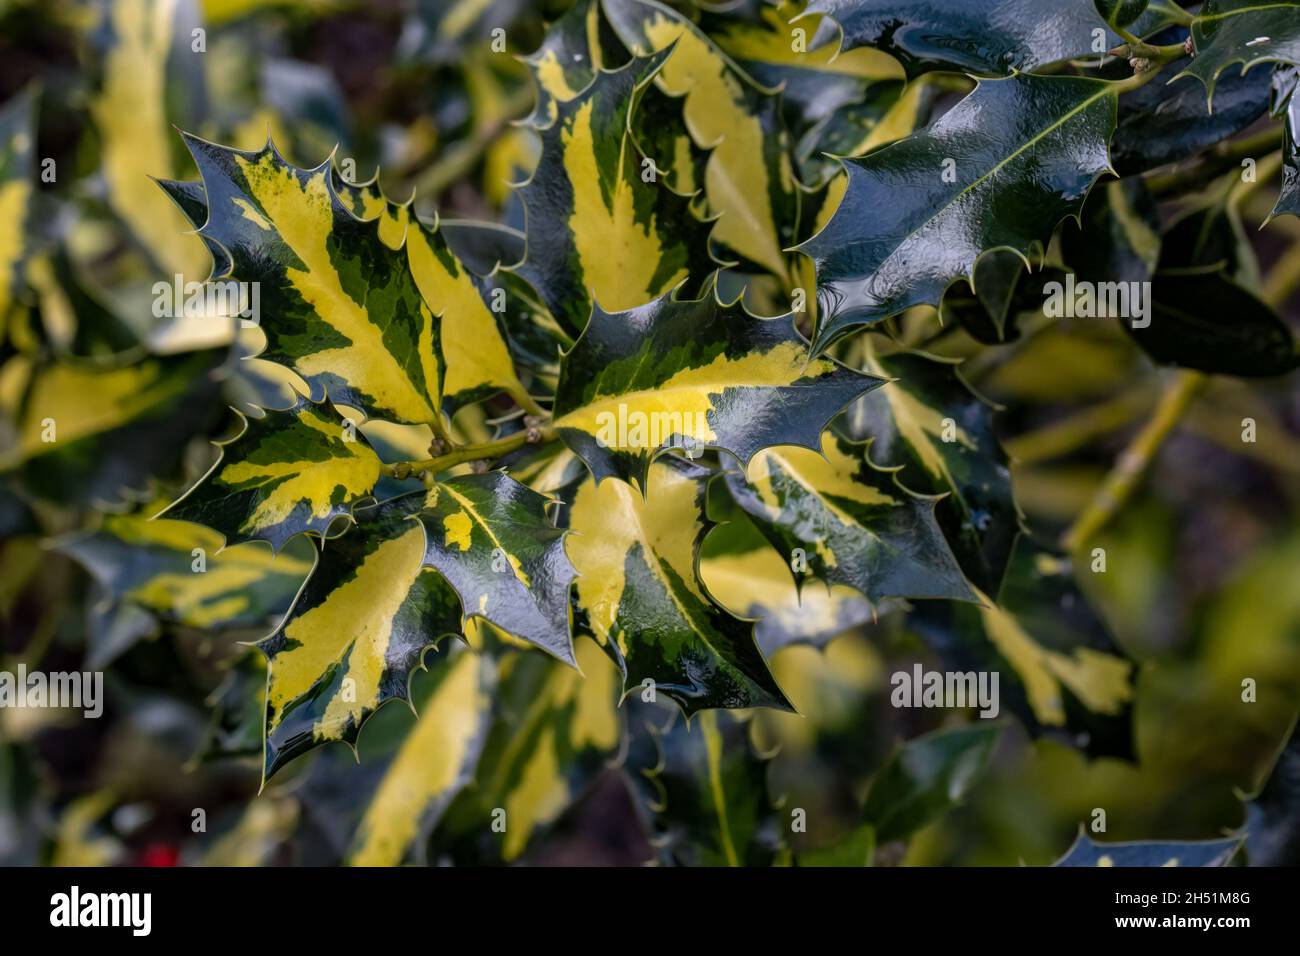 Auffallend buntes Grün und Gold Ilex aquifolium Northern Lights Laub Stockfoto